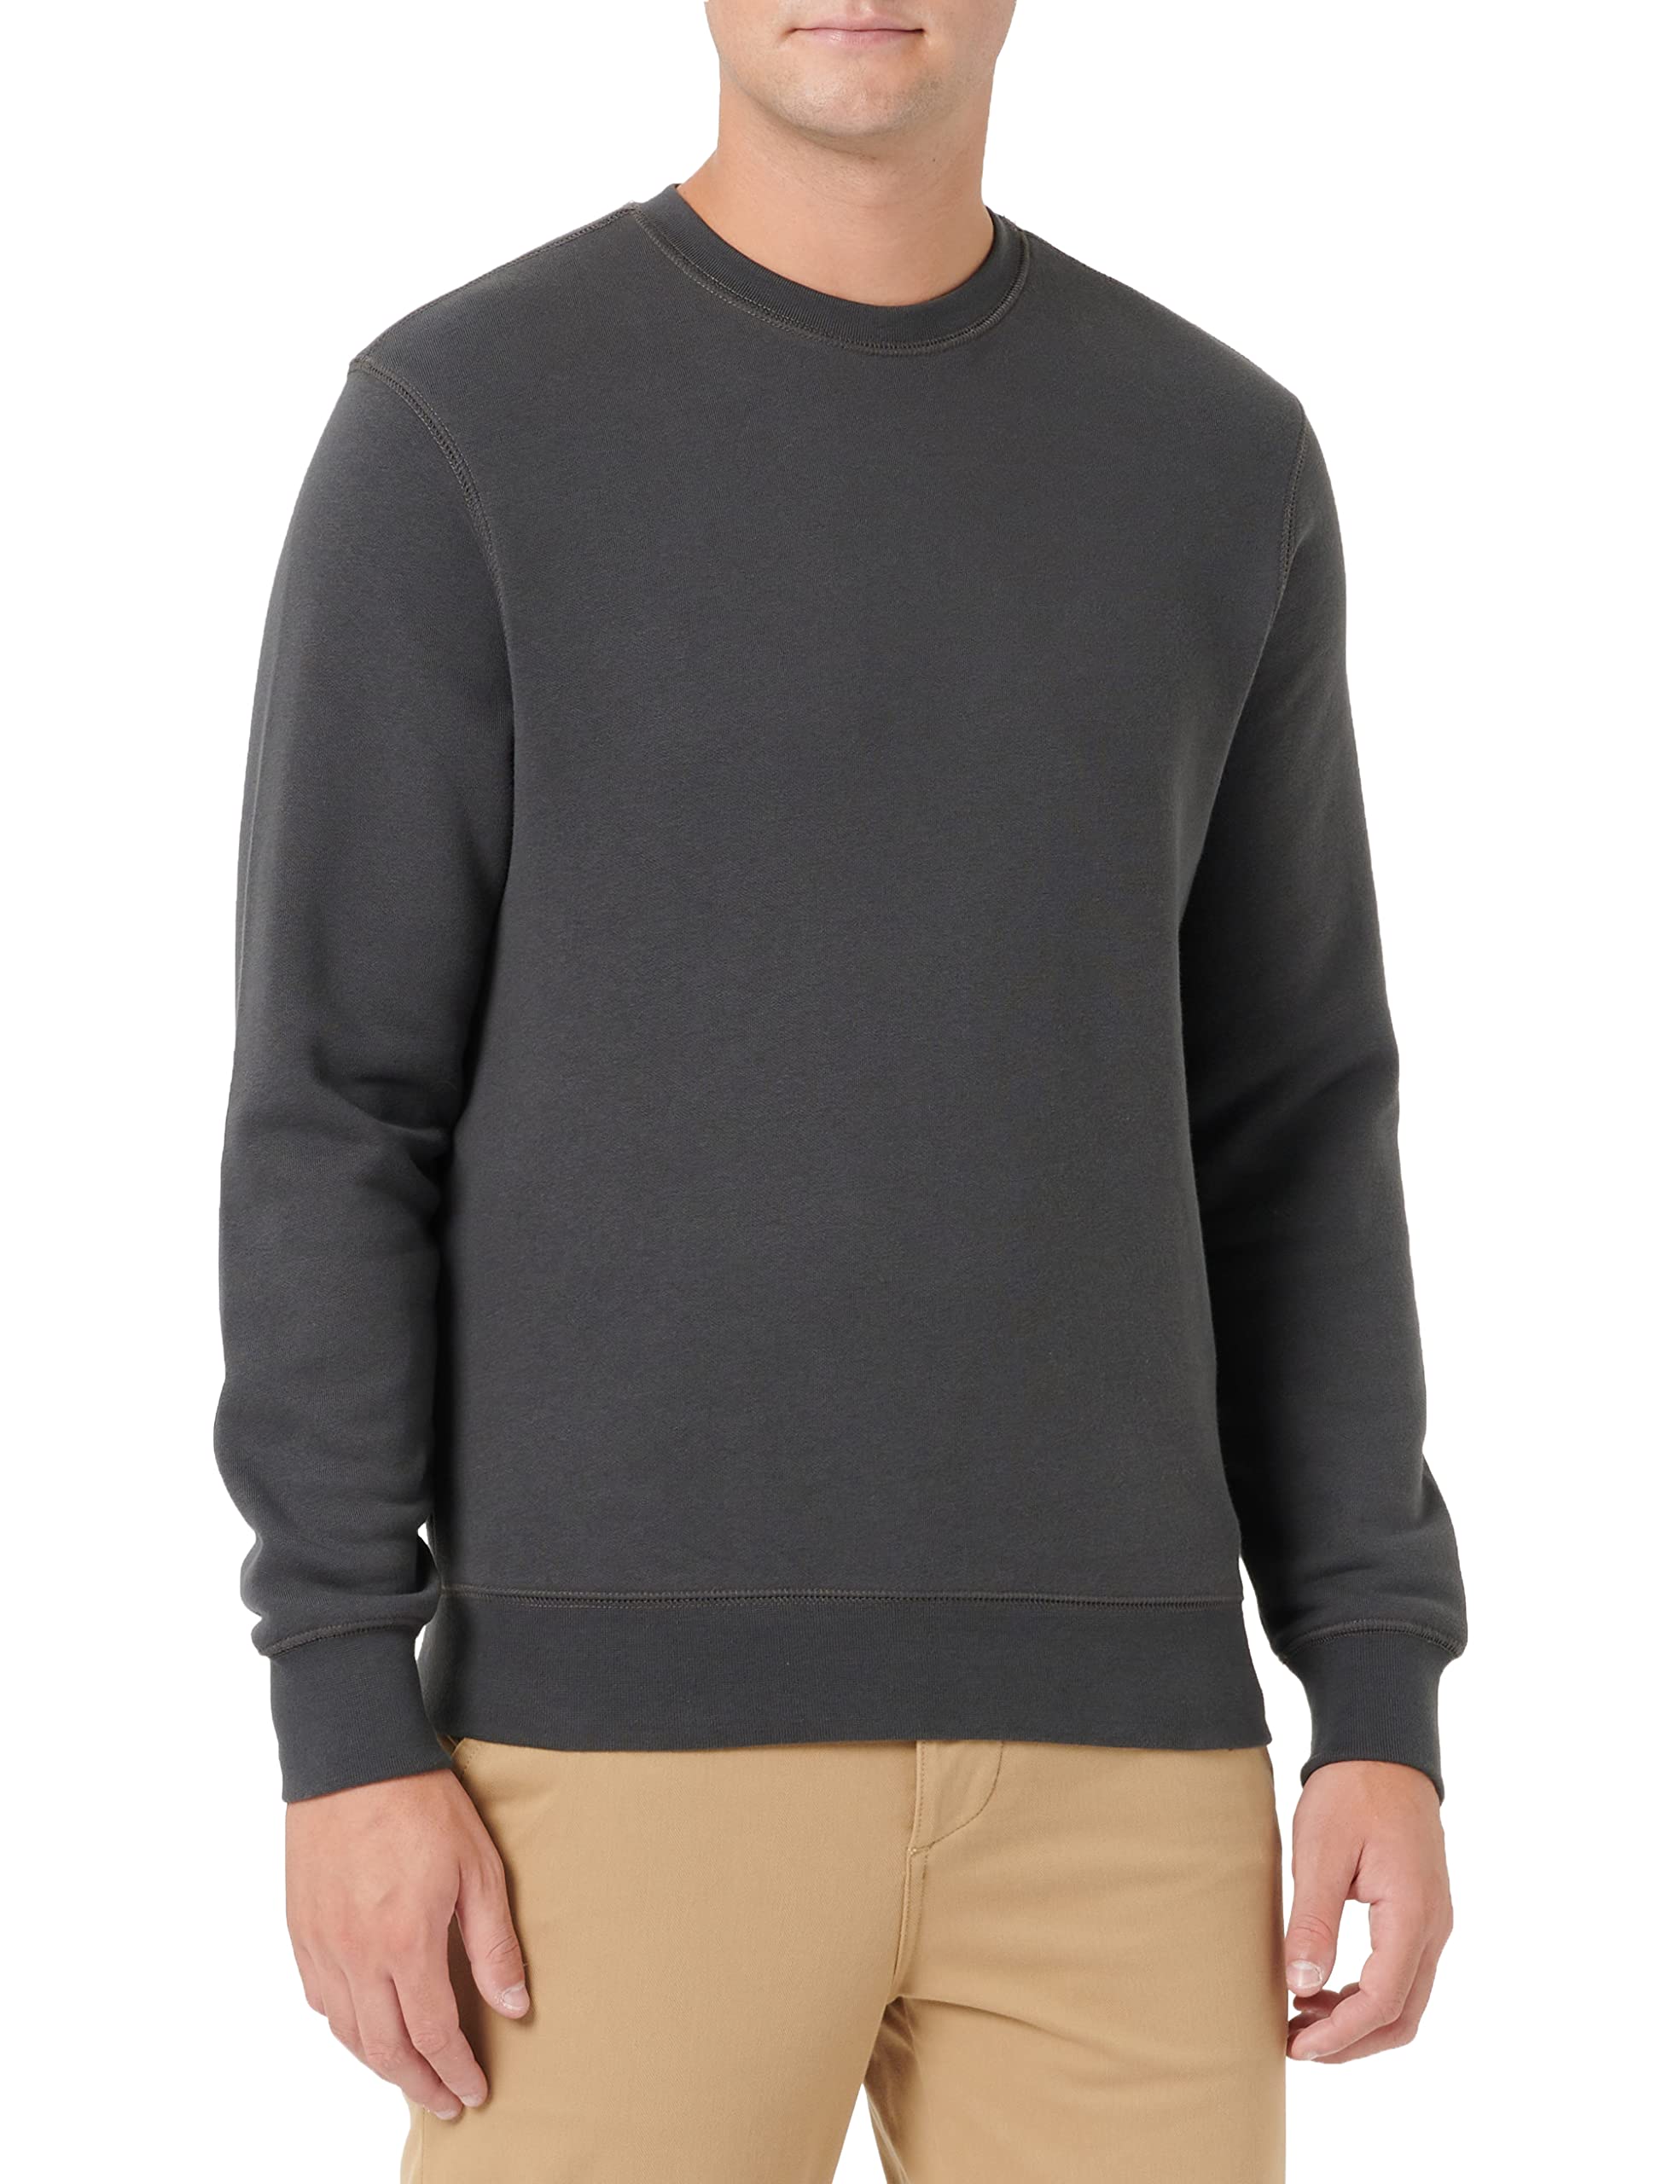 HRM Unisex Sweatshirt I Premium Sweatshirt für Damen & Herren bis 60°C waschbar I Basic Sweatshirt I Damen- & Herren-Pullover I Workwear I Hochwertige & nachhaltige Kleidung